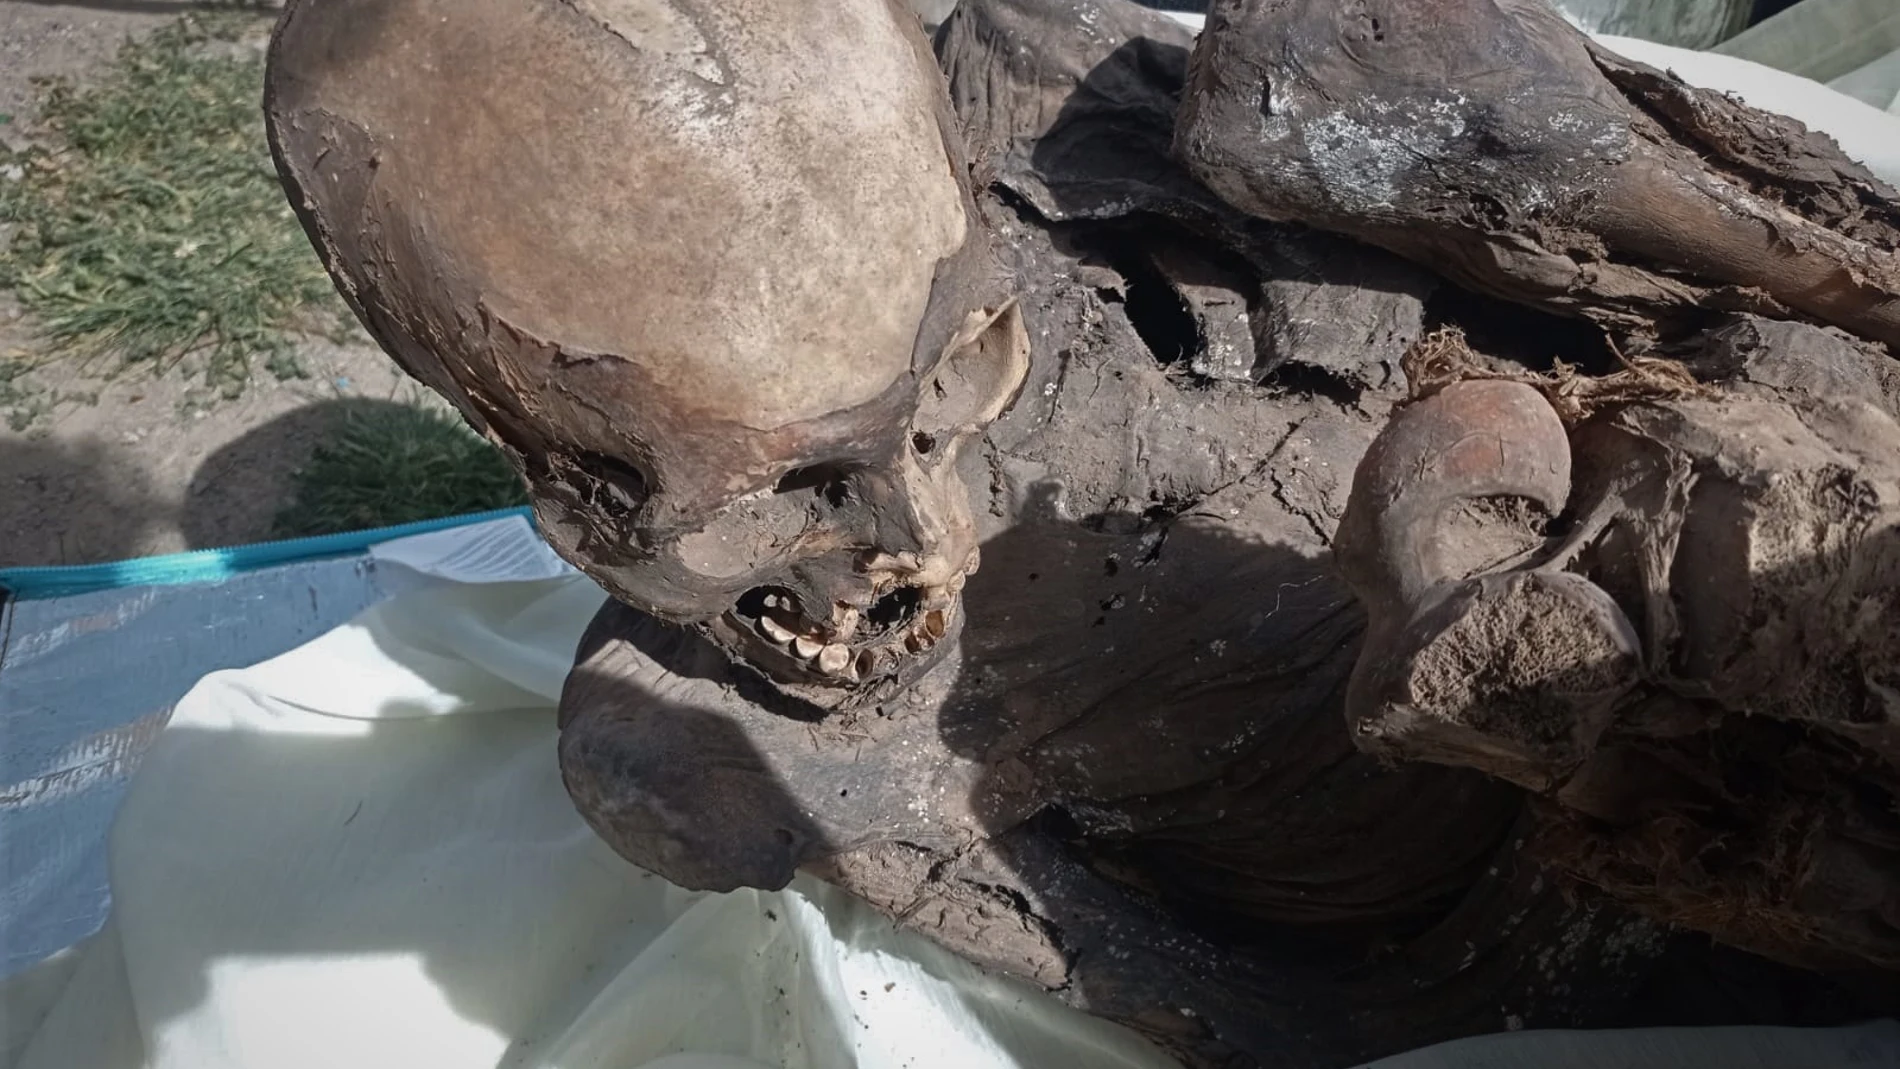 AME8343. LIMA (PERÚ), 27/02/2023.- Fotografía cedida por el Ministerio de Cultura, que muestra una momia prehispánica. Una momia prehispánica, de entre 600 y 800 años de antigüedad, fue hallada dentro de la mochila de un repartidor de una empresa de "delivery" (reparto a domicilio) en la región peruana de Puno, colindante con Bolivia, informaron este lunes fuentes oficiales. EFE/Ministerio de Cultura/SOLO USO EDITORIAL/ SOLO DISPONIBLE PARA ILUSTRAR LA NOTICIA QUE ACOMPAÑA (CRÉDITO OBLIGATORIO) 